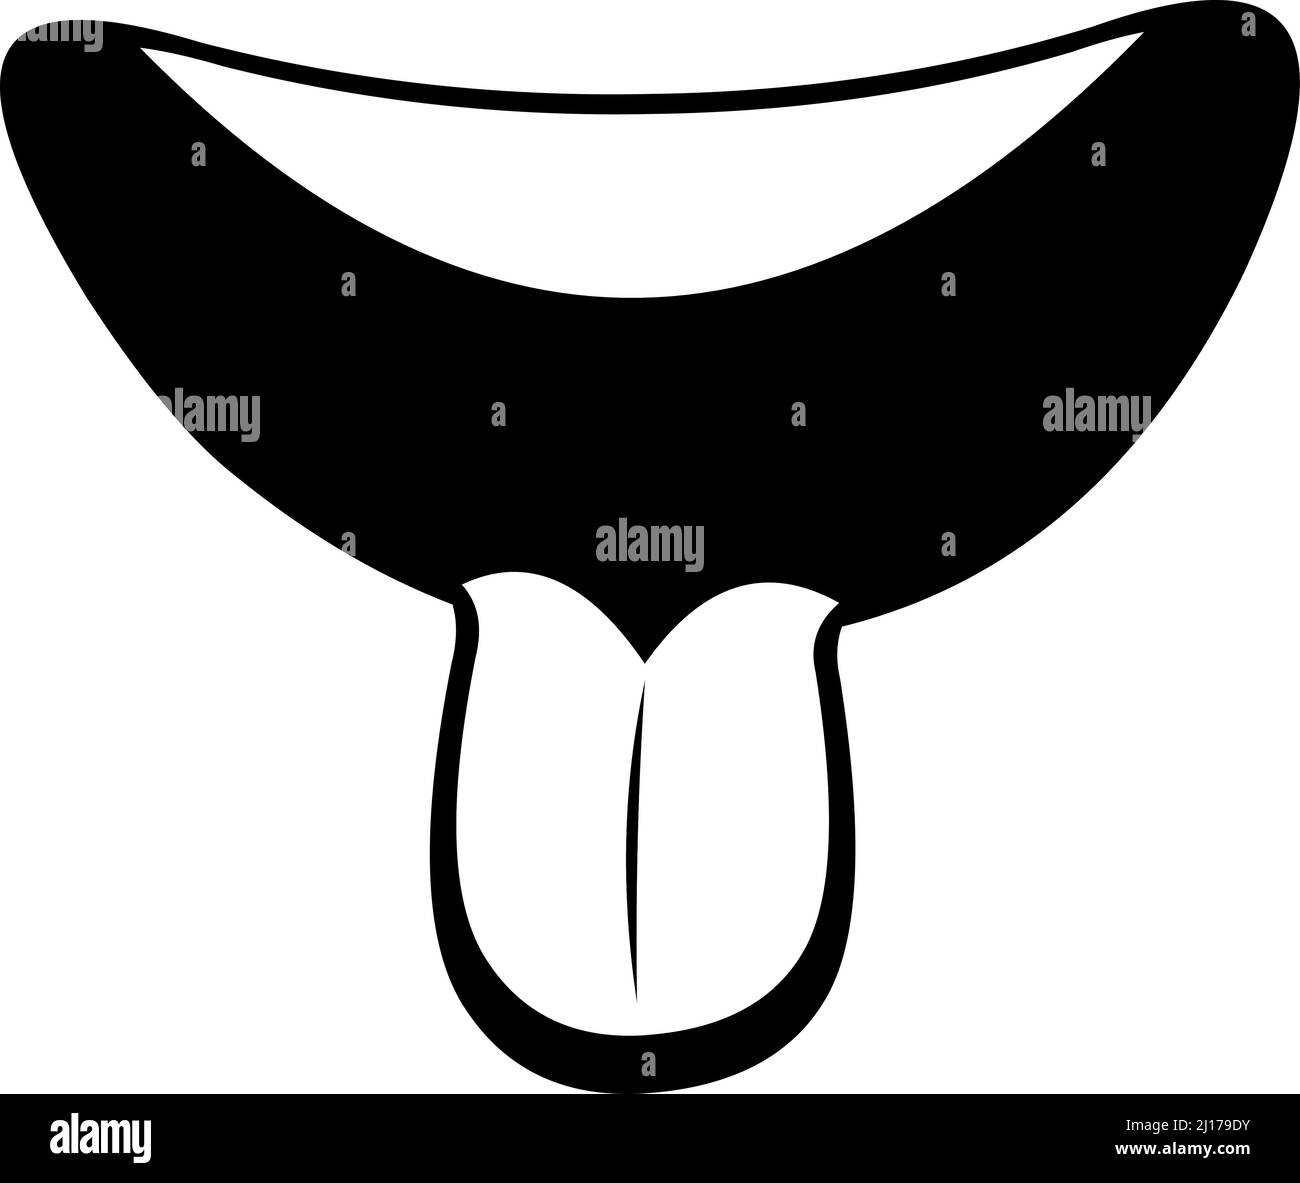 Vektor-Illustration eines Cartoon-Mund mit der Zunge heraus, in schwarz und weiß gezeichnet Stock Vektor